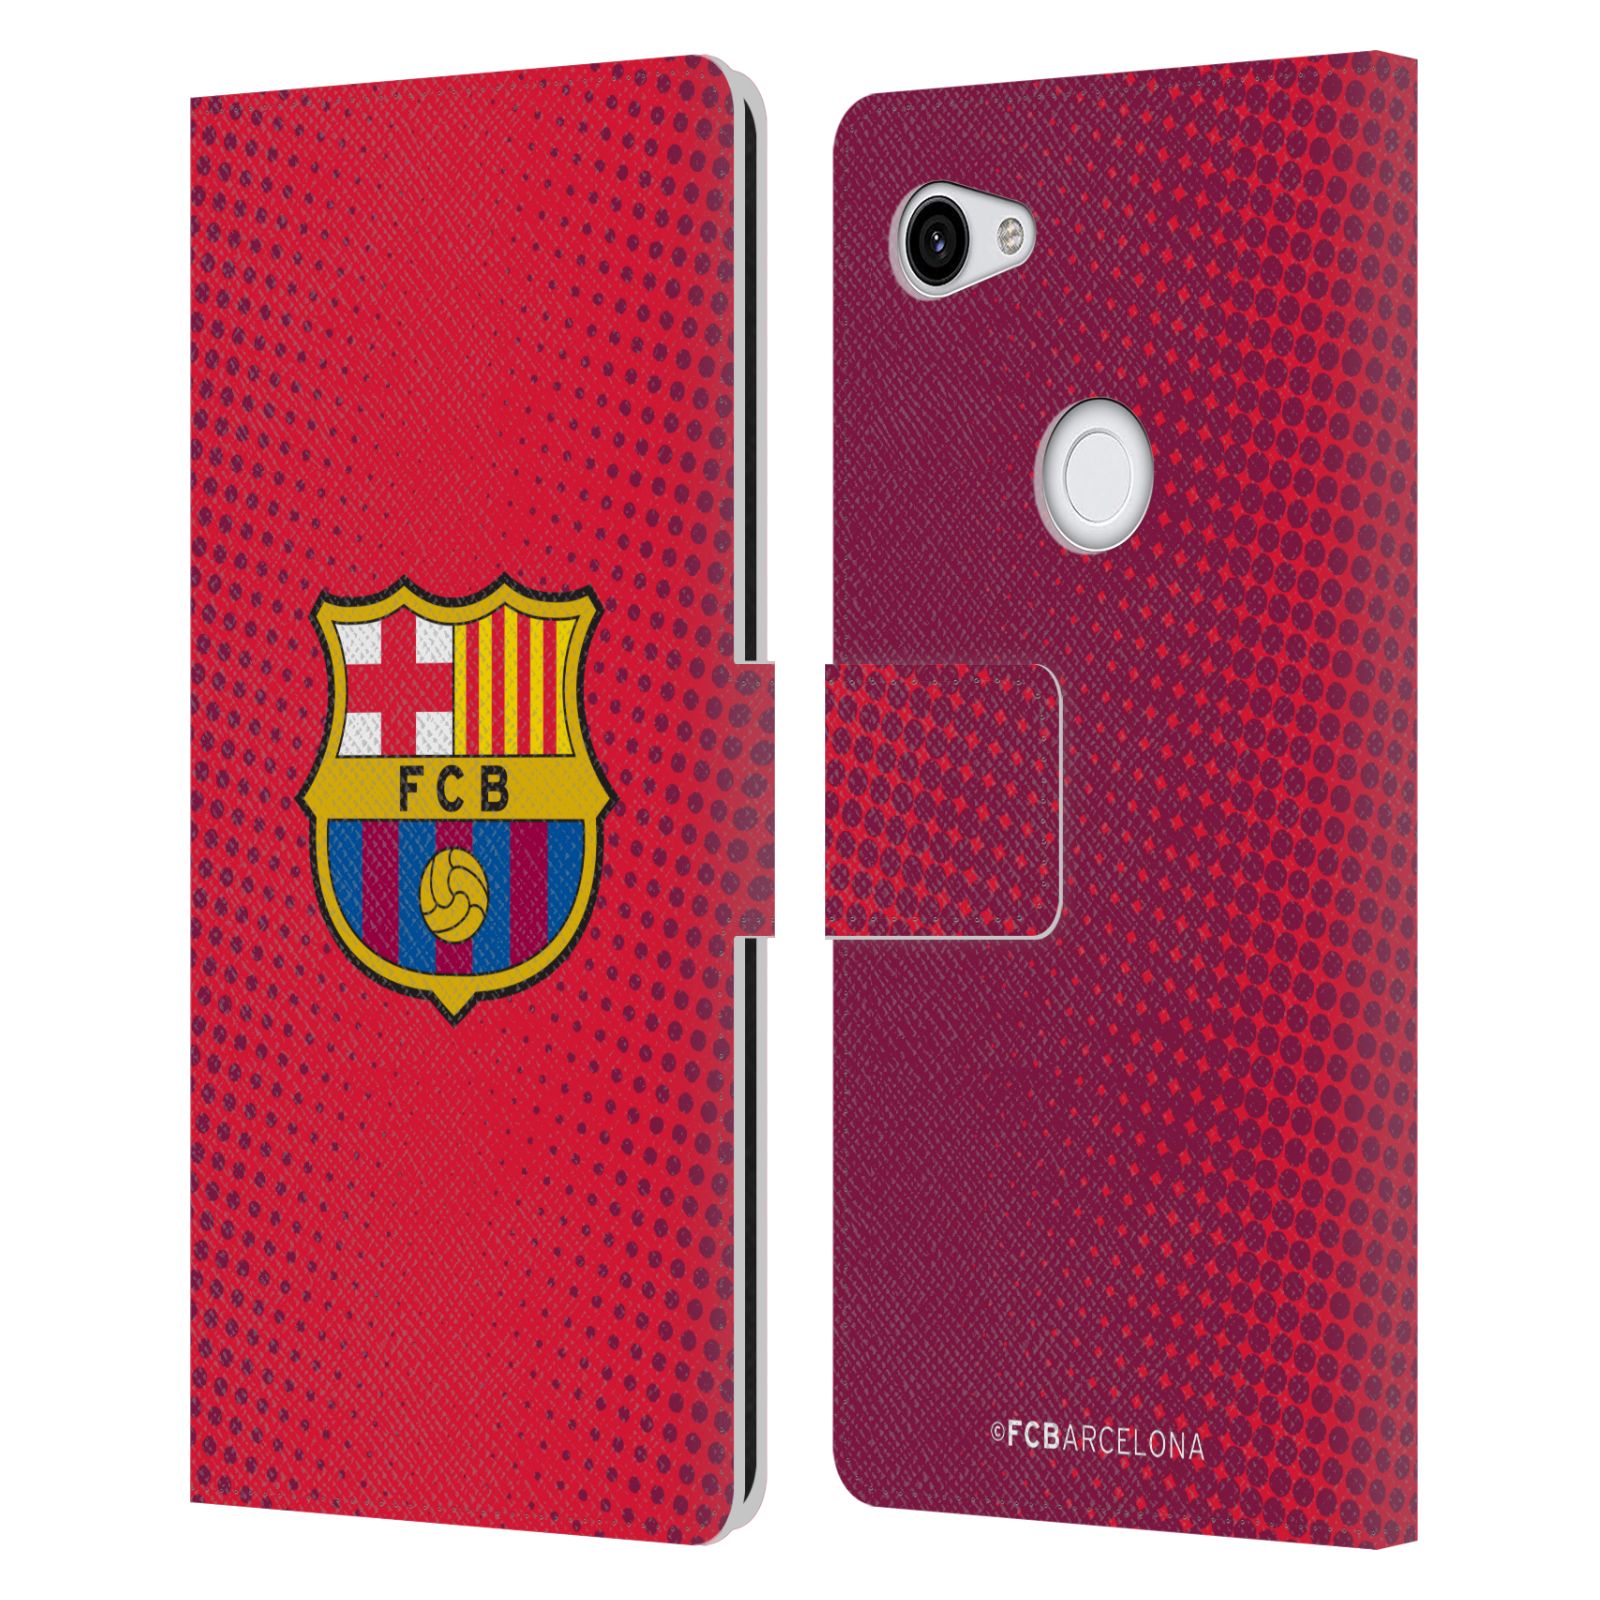 Pouzdro na mobil Google Pixel 3A XL  - HEAD CASE - FC Barcelona - Tečky červená